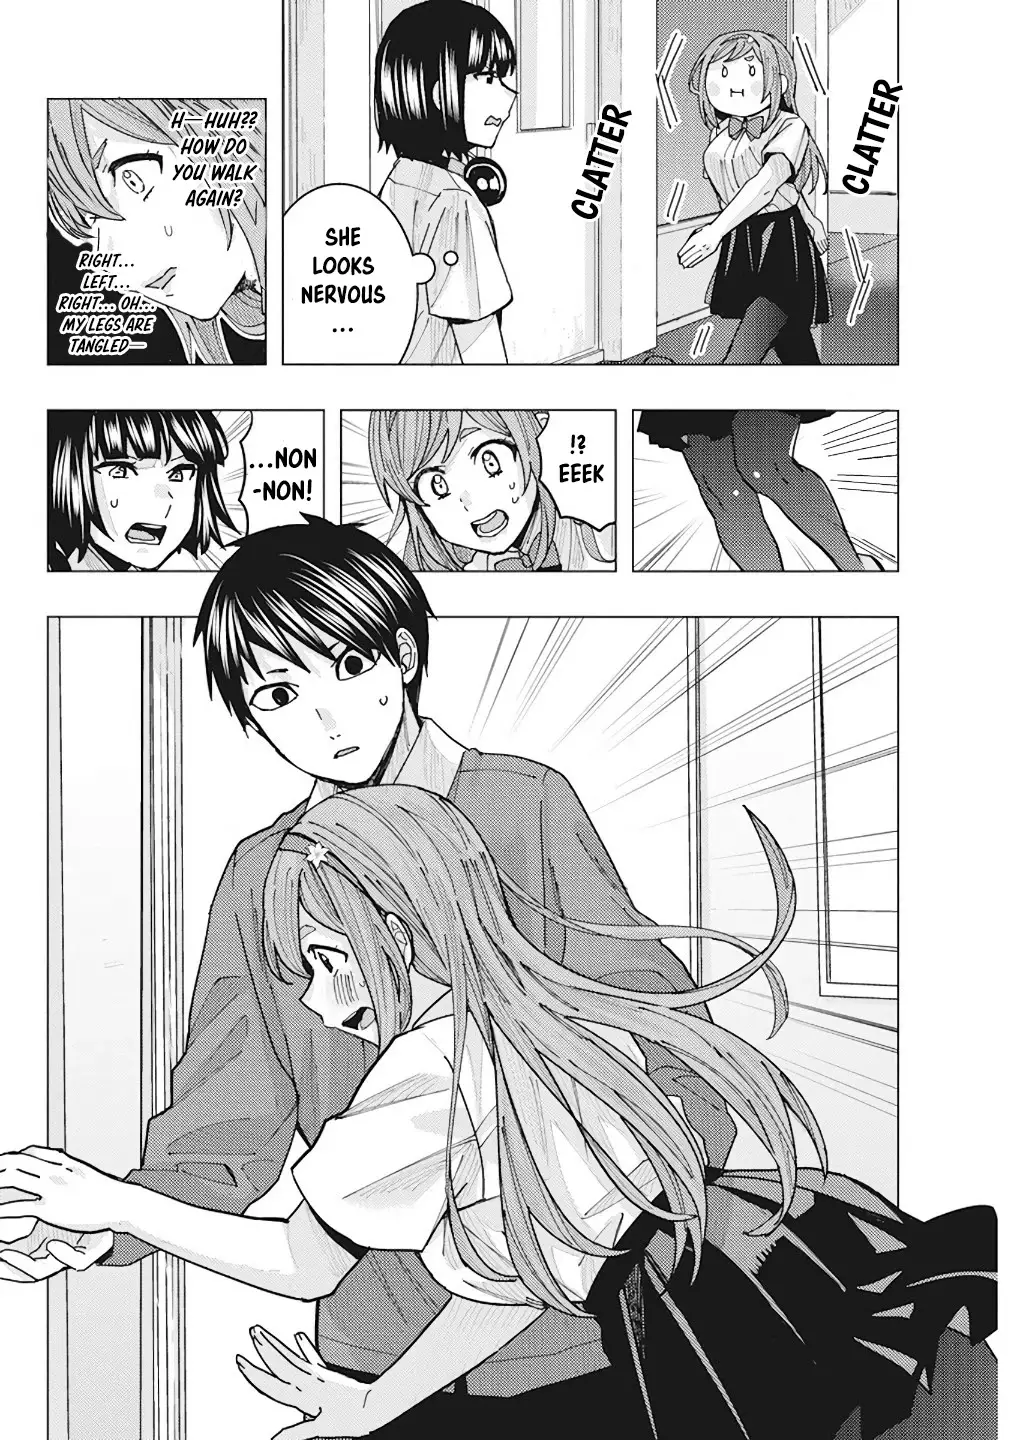 "nobukuni-San" Does She Like Me? - 13 page 14-9fa4d63f